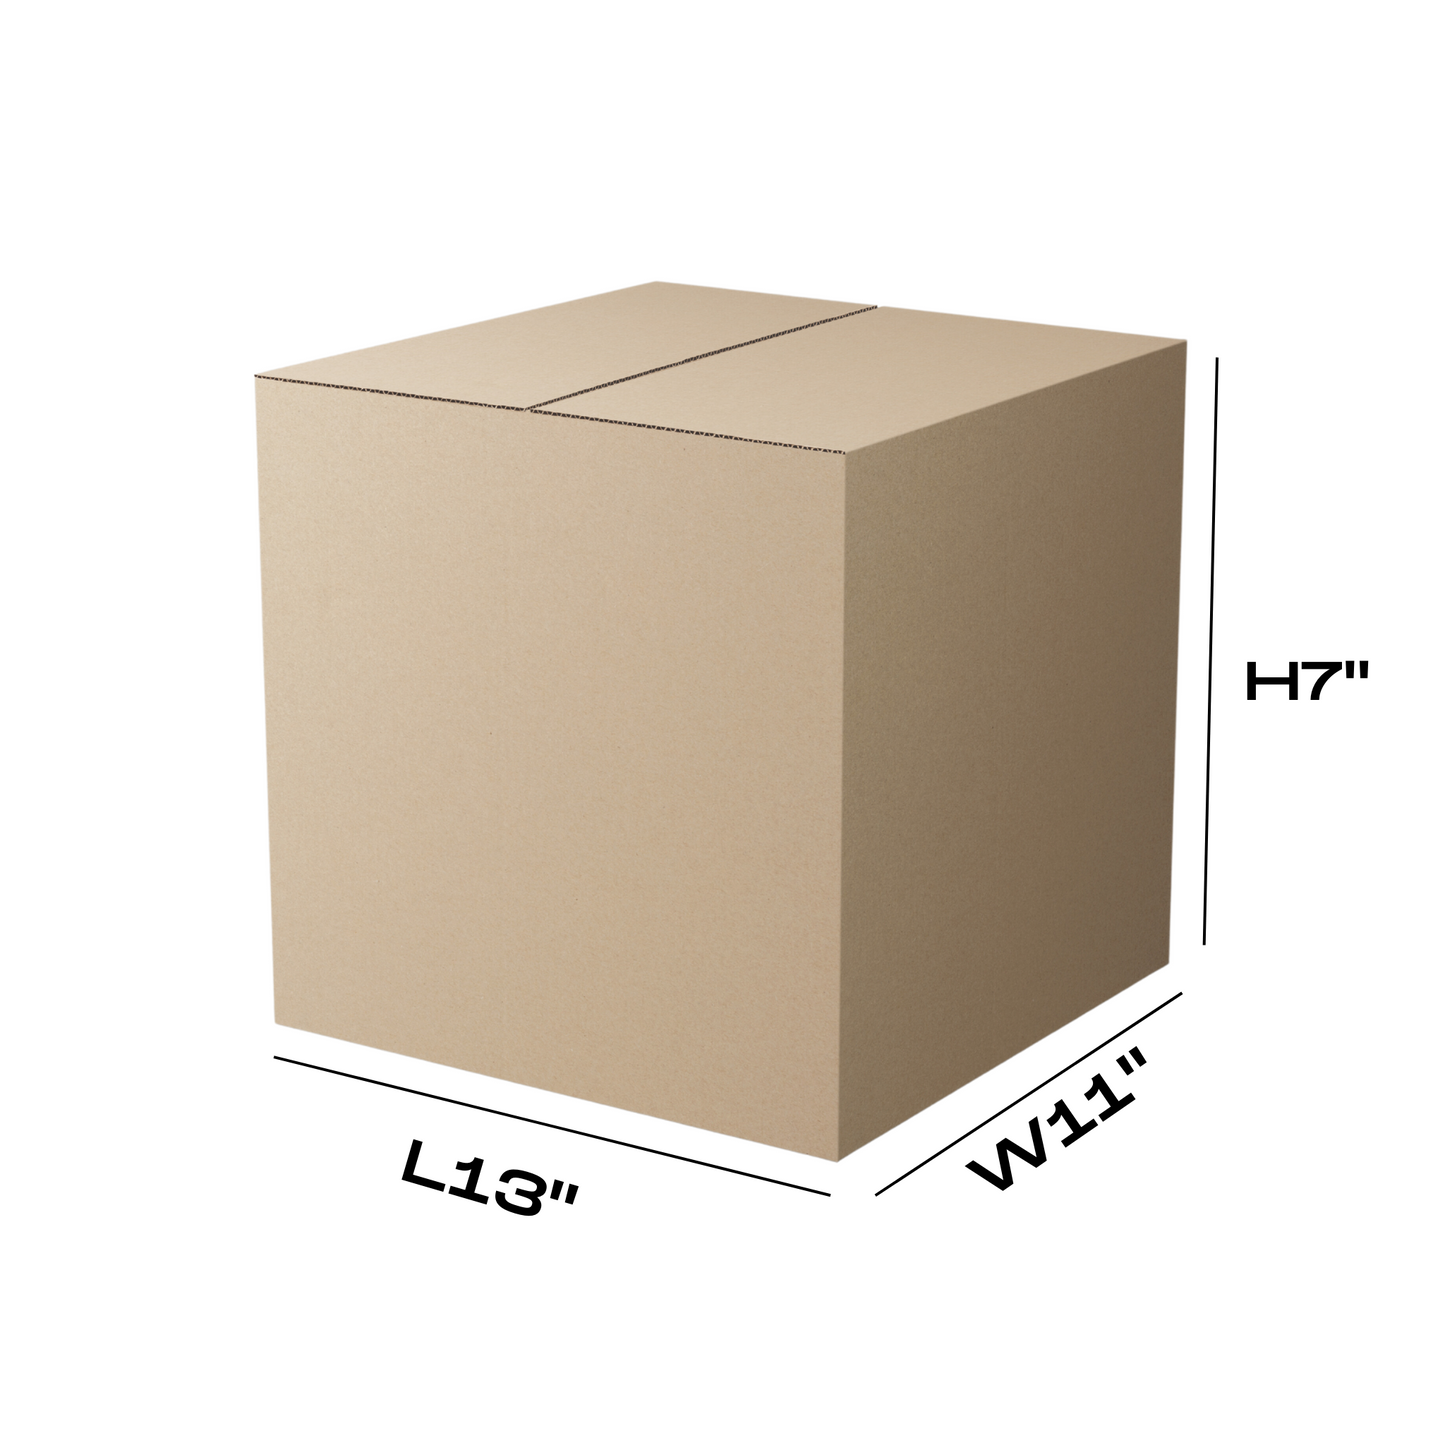 L13" x W11" x H7" Used box